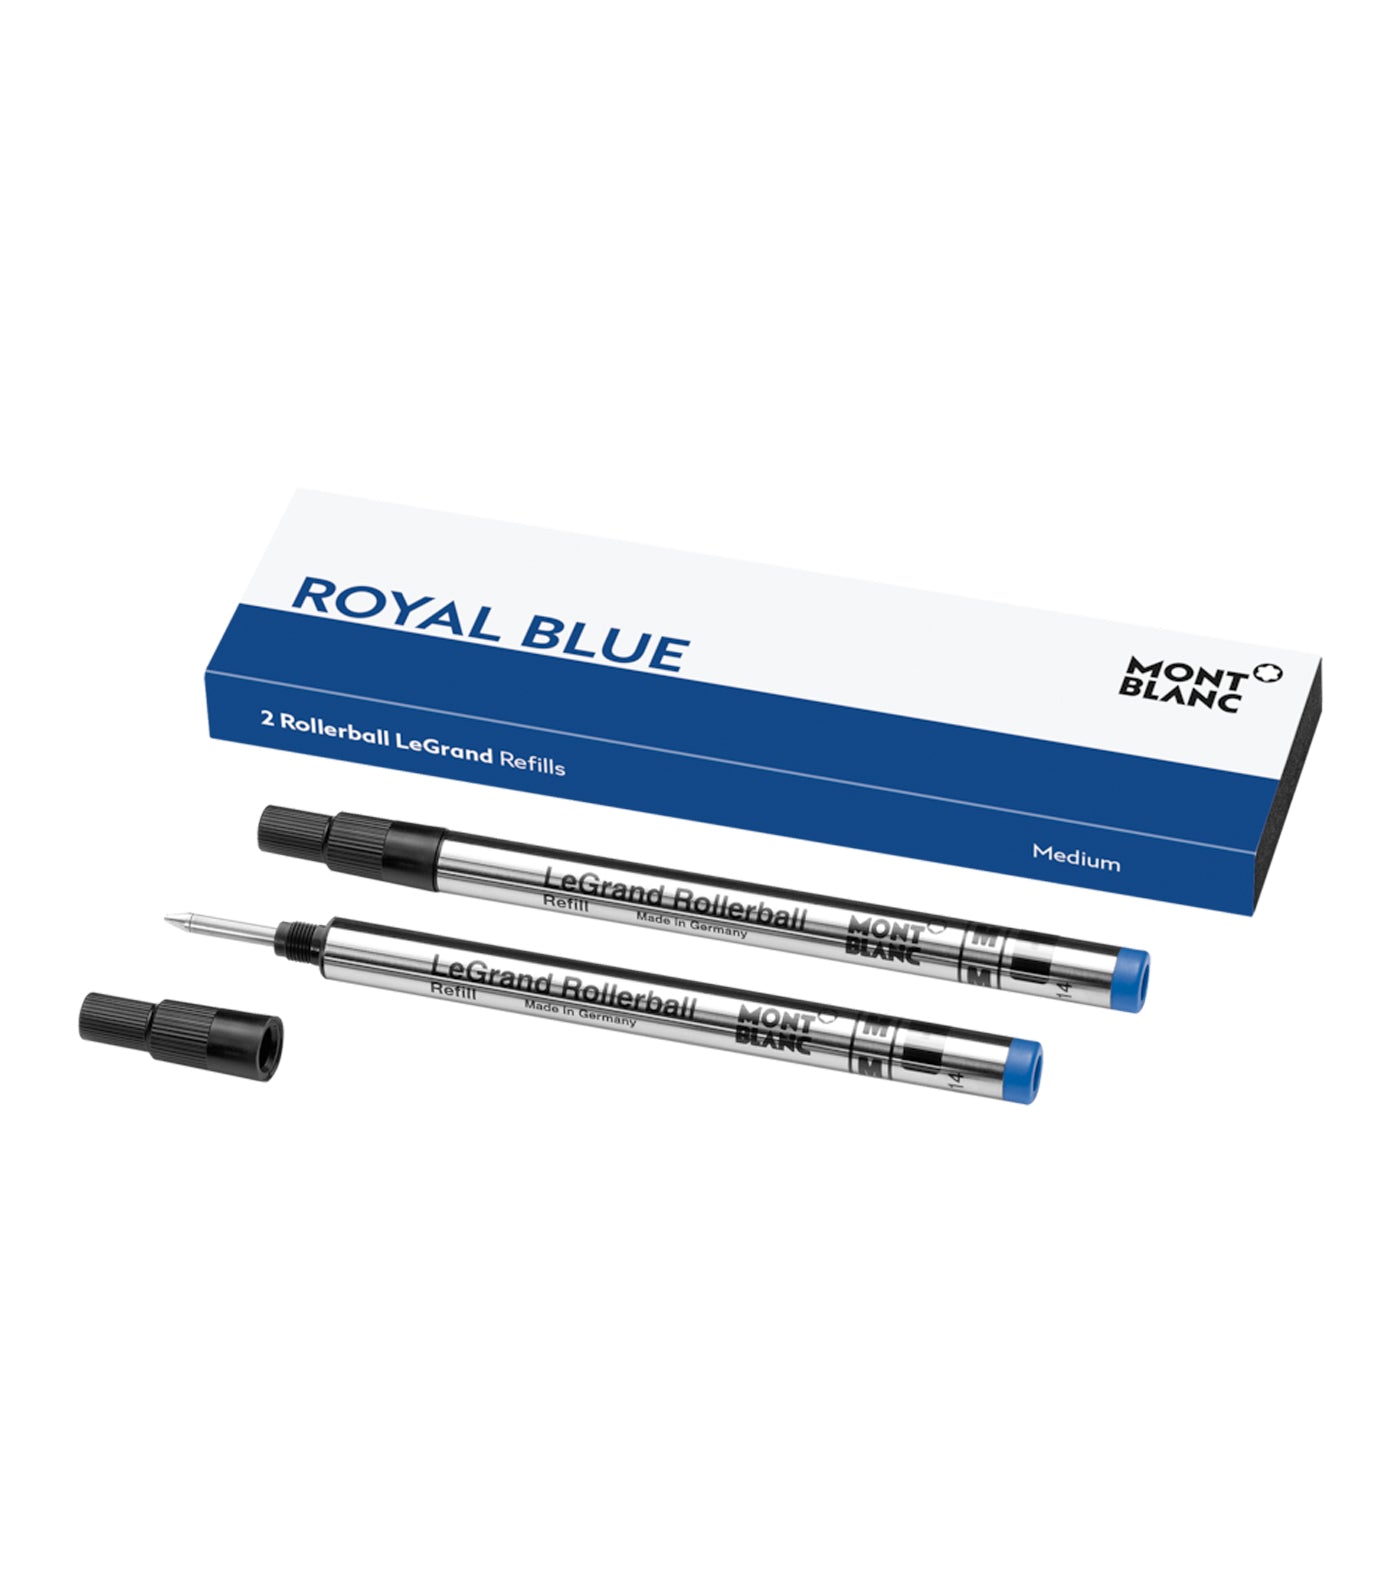 2 Medium Rollerball LeGrand Refills Royal Blue